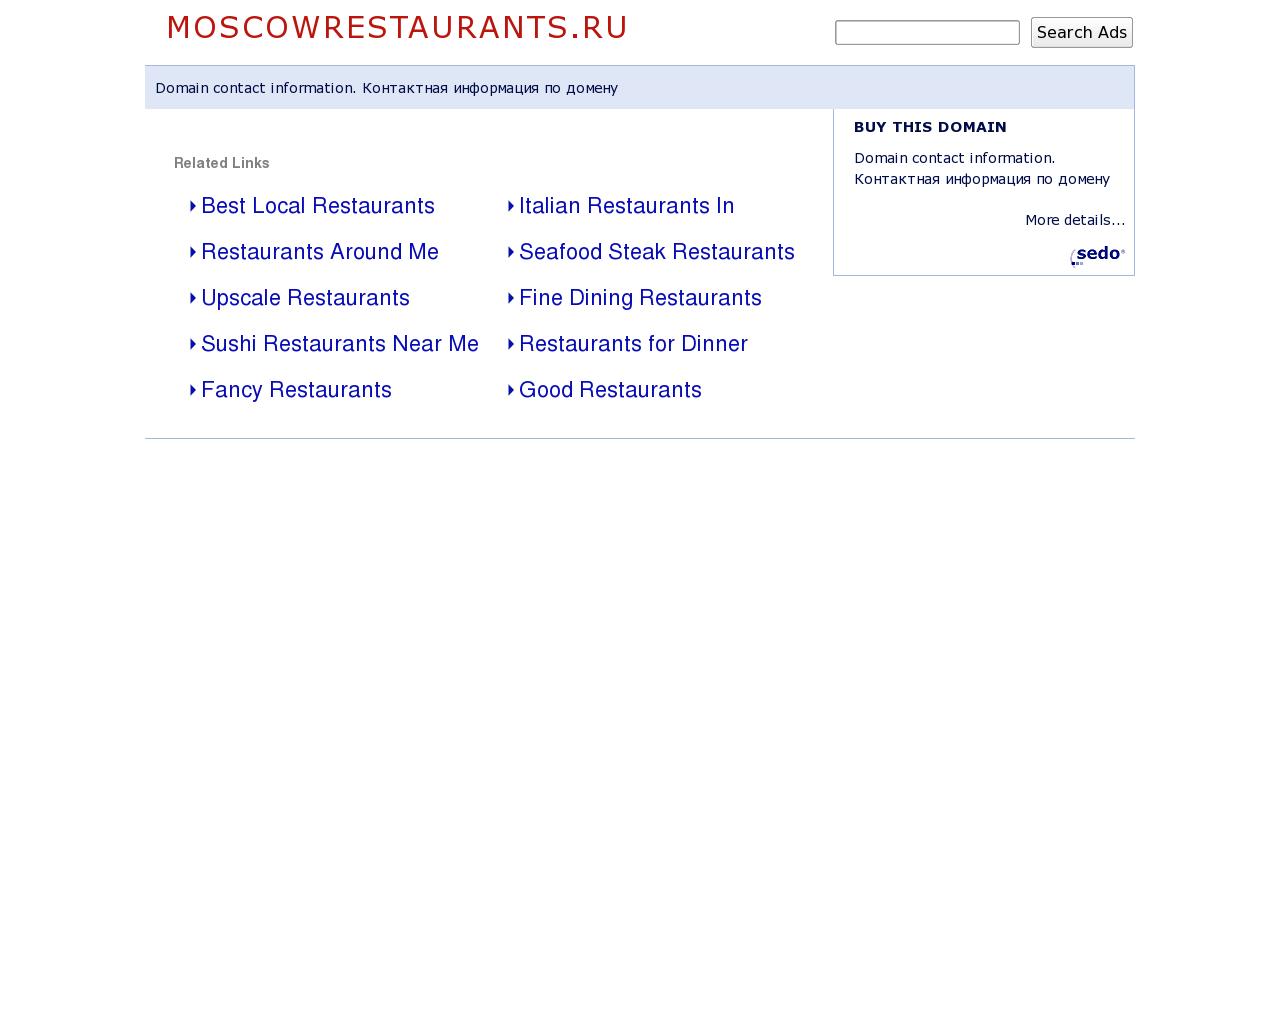 Изображение сайта moscowrestaurants.ru в разрешении 1280x1024